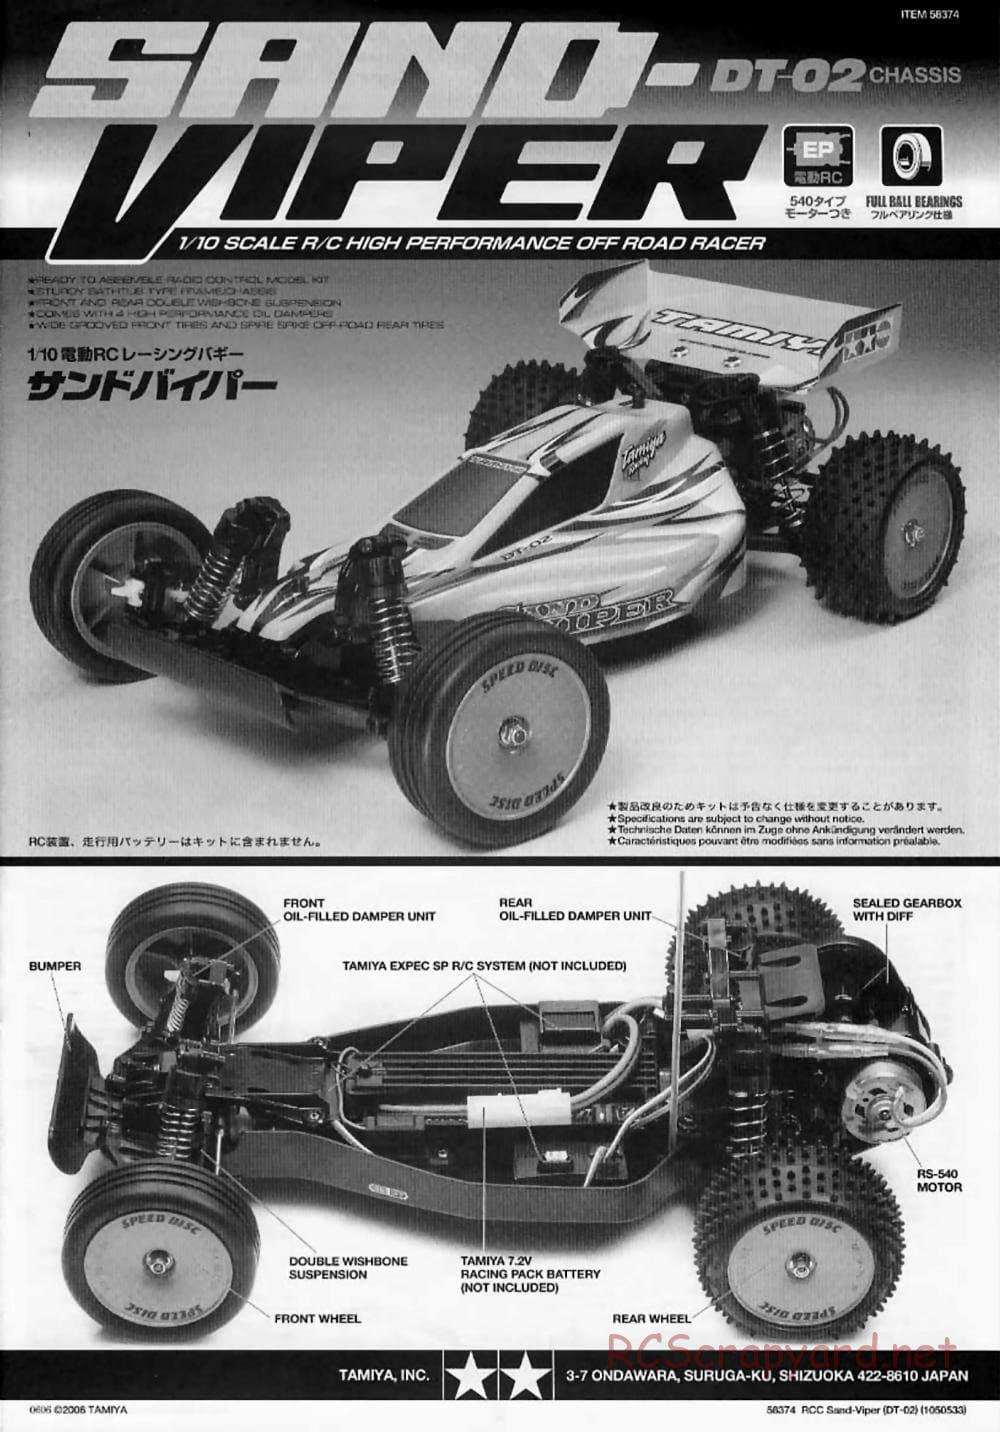 Tamiya - Sand Viper Chassis - Manual - Page 1